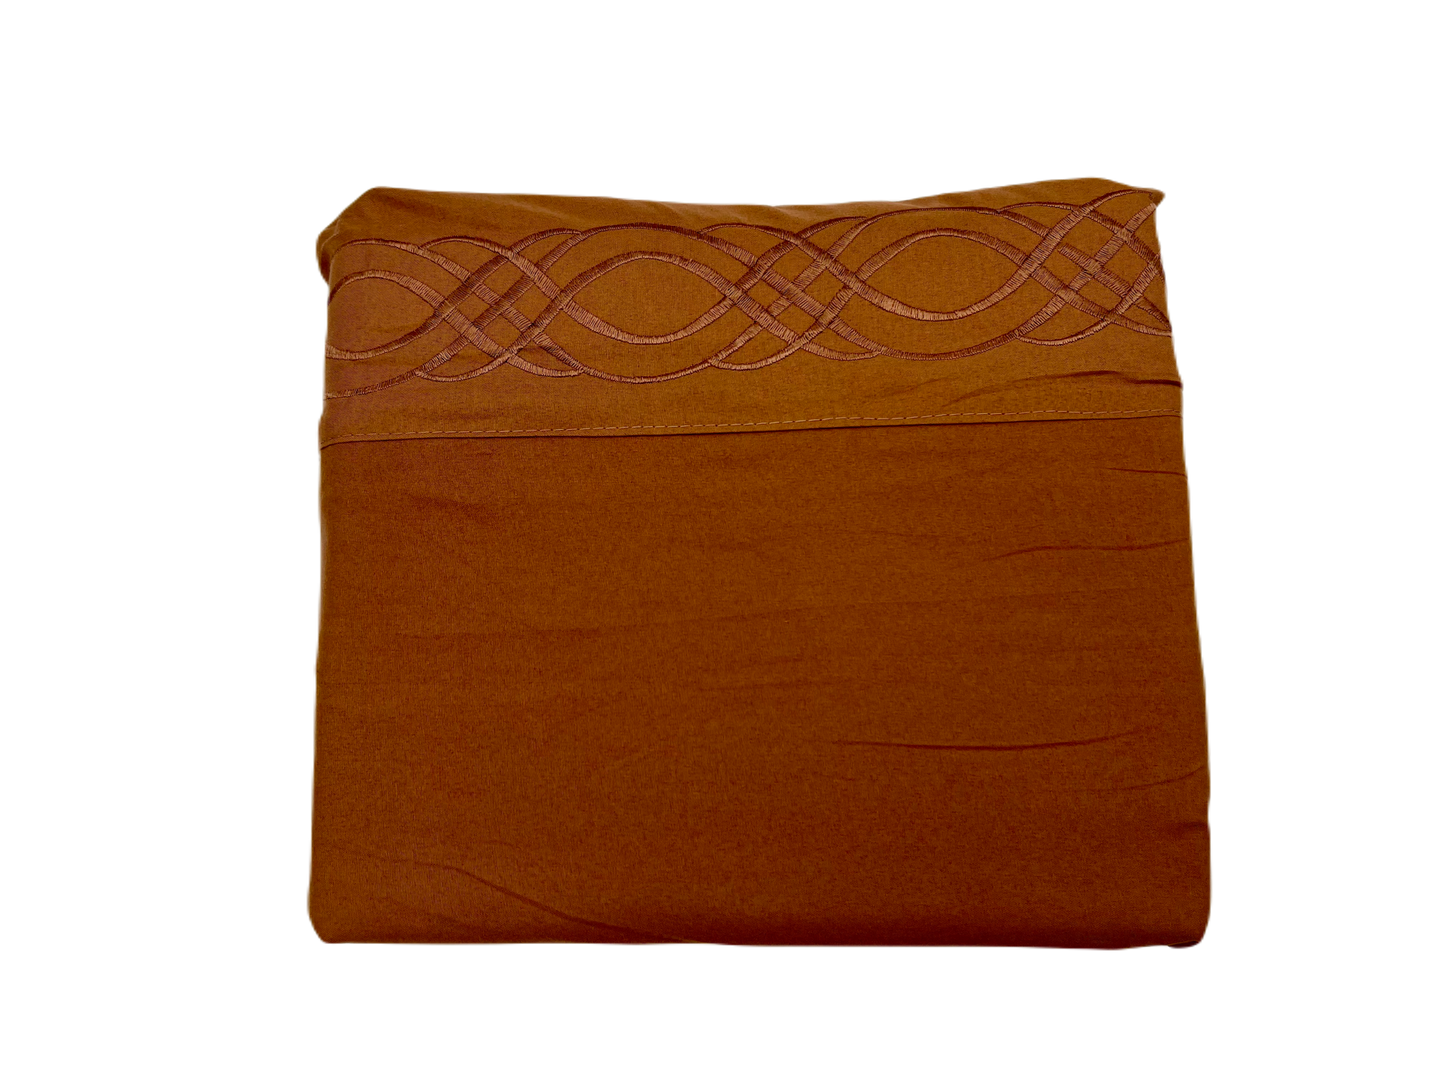 Sábana de lujo elaborada con Microfibra para colchón ancho de 2500 hilos tacto de Algodón Egipcio Tamaño KING SIZE con fundas para Almohada